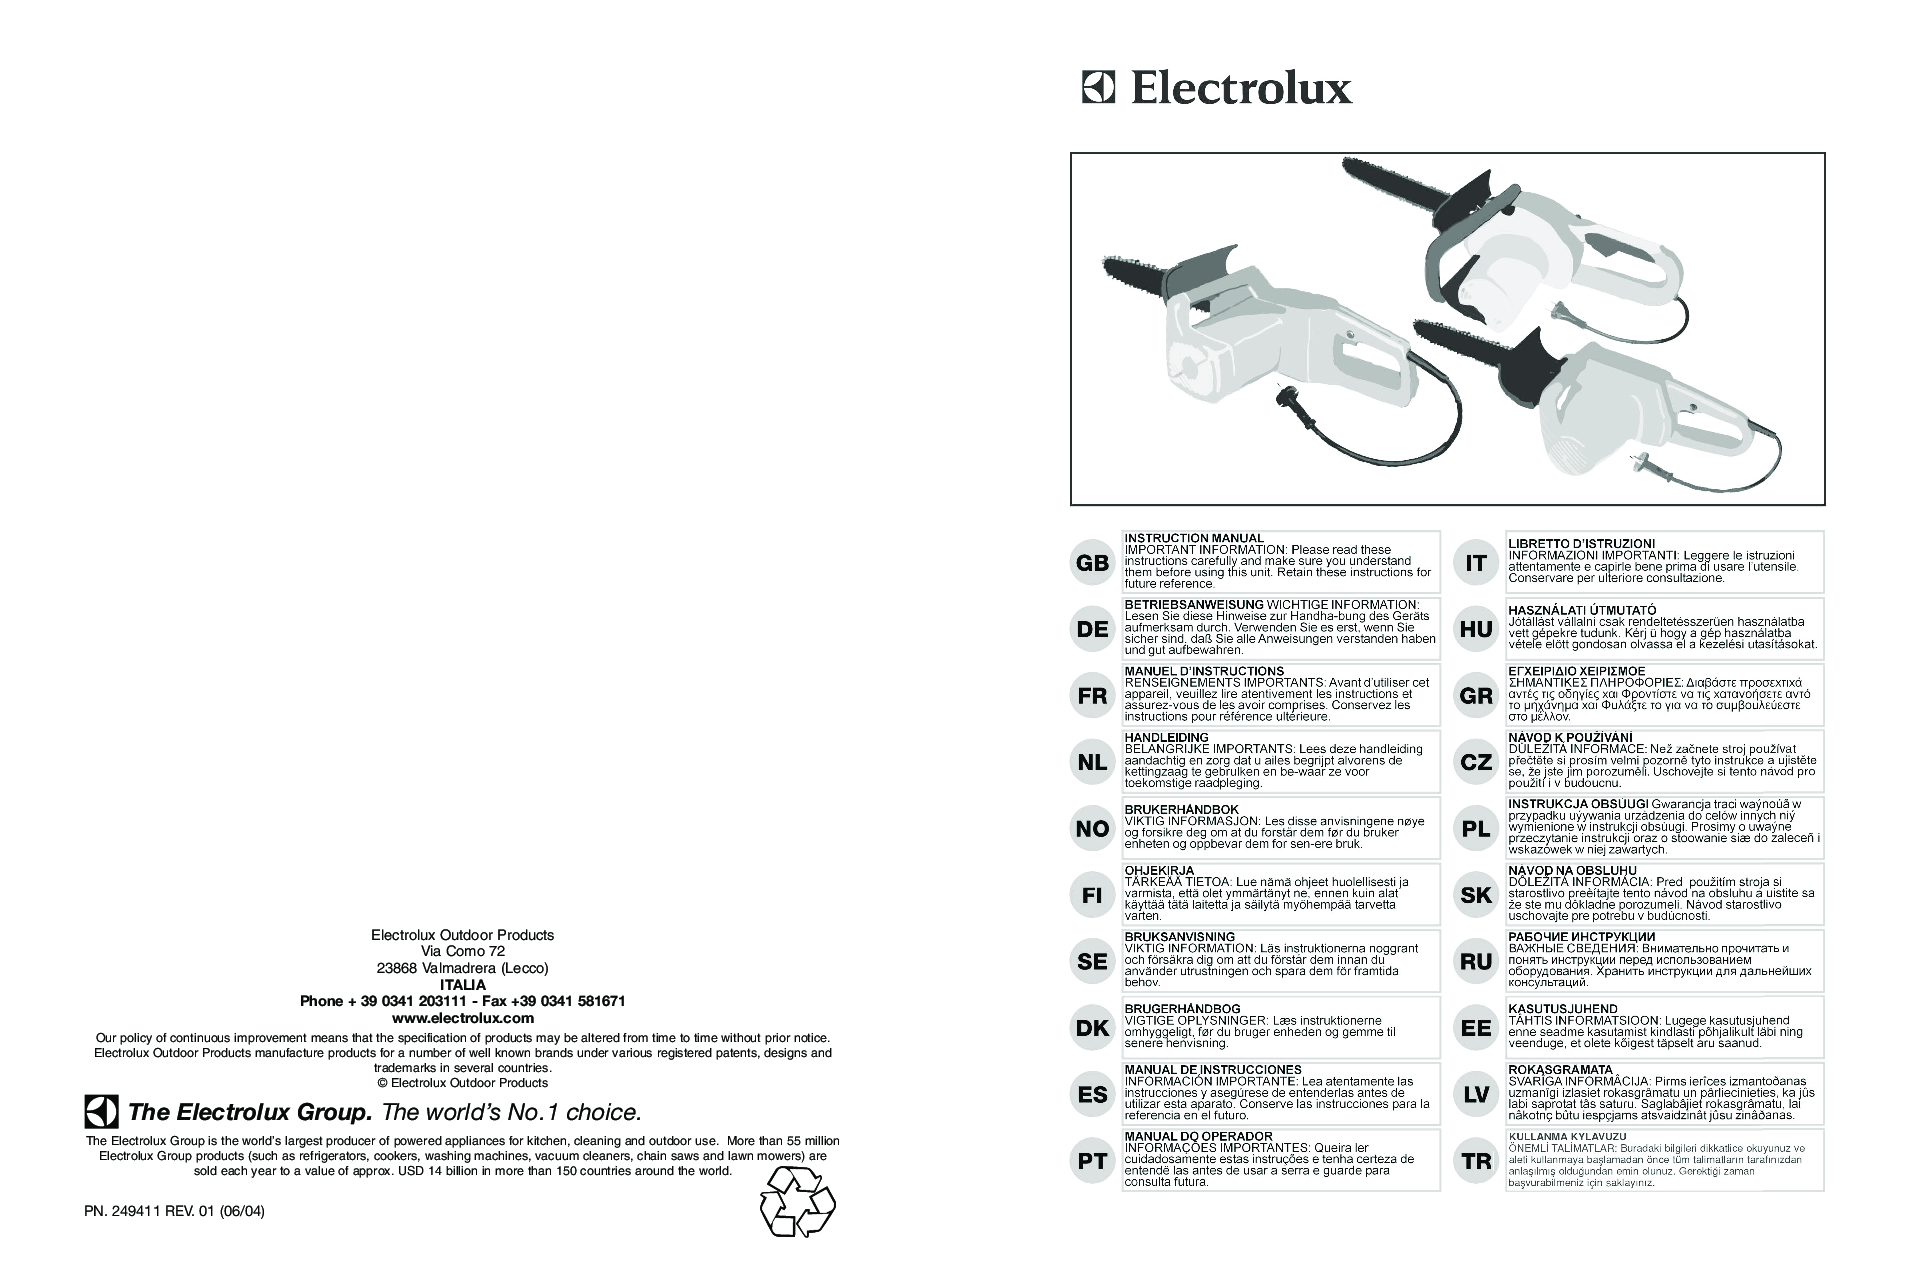 Electrolux Electramac 314, Electramac 330, Electramac 95390017700, Electramac 95390036600, Electramac 95390017600 User Manual